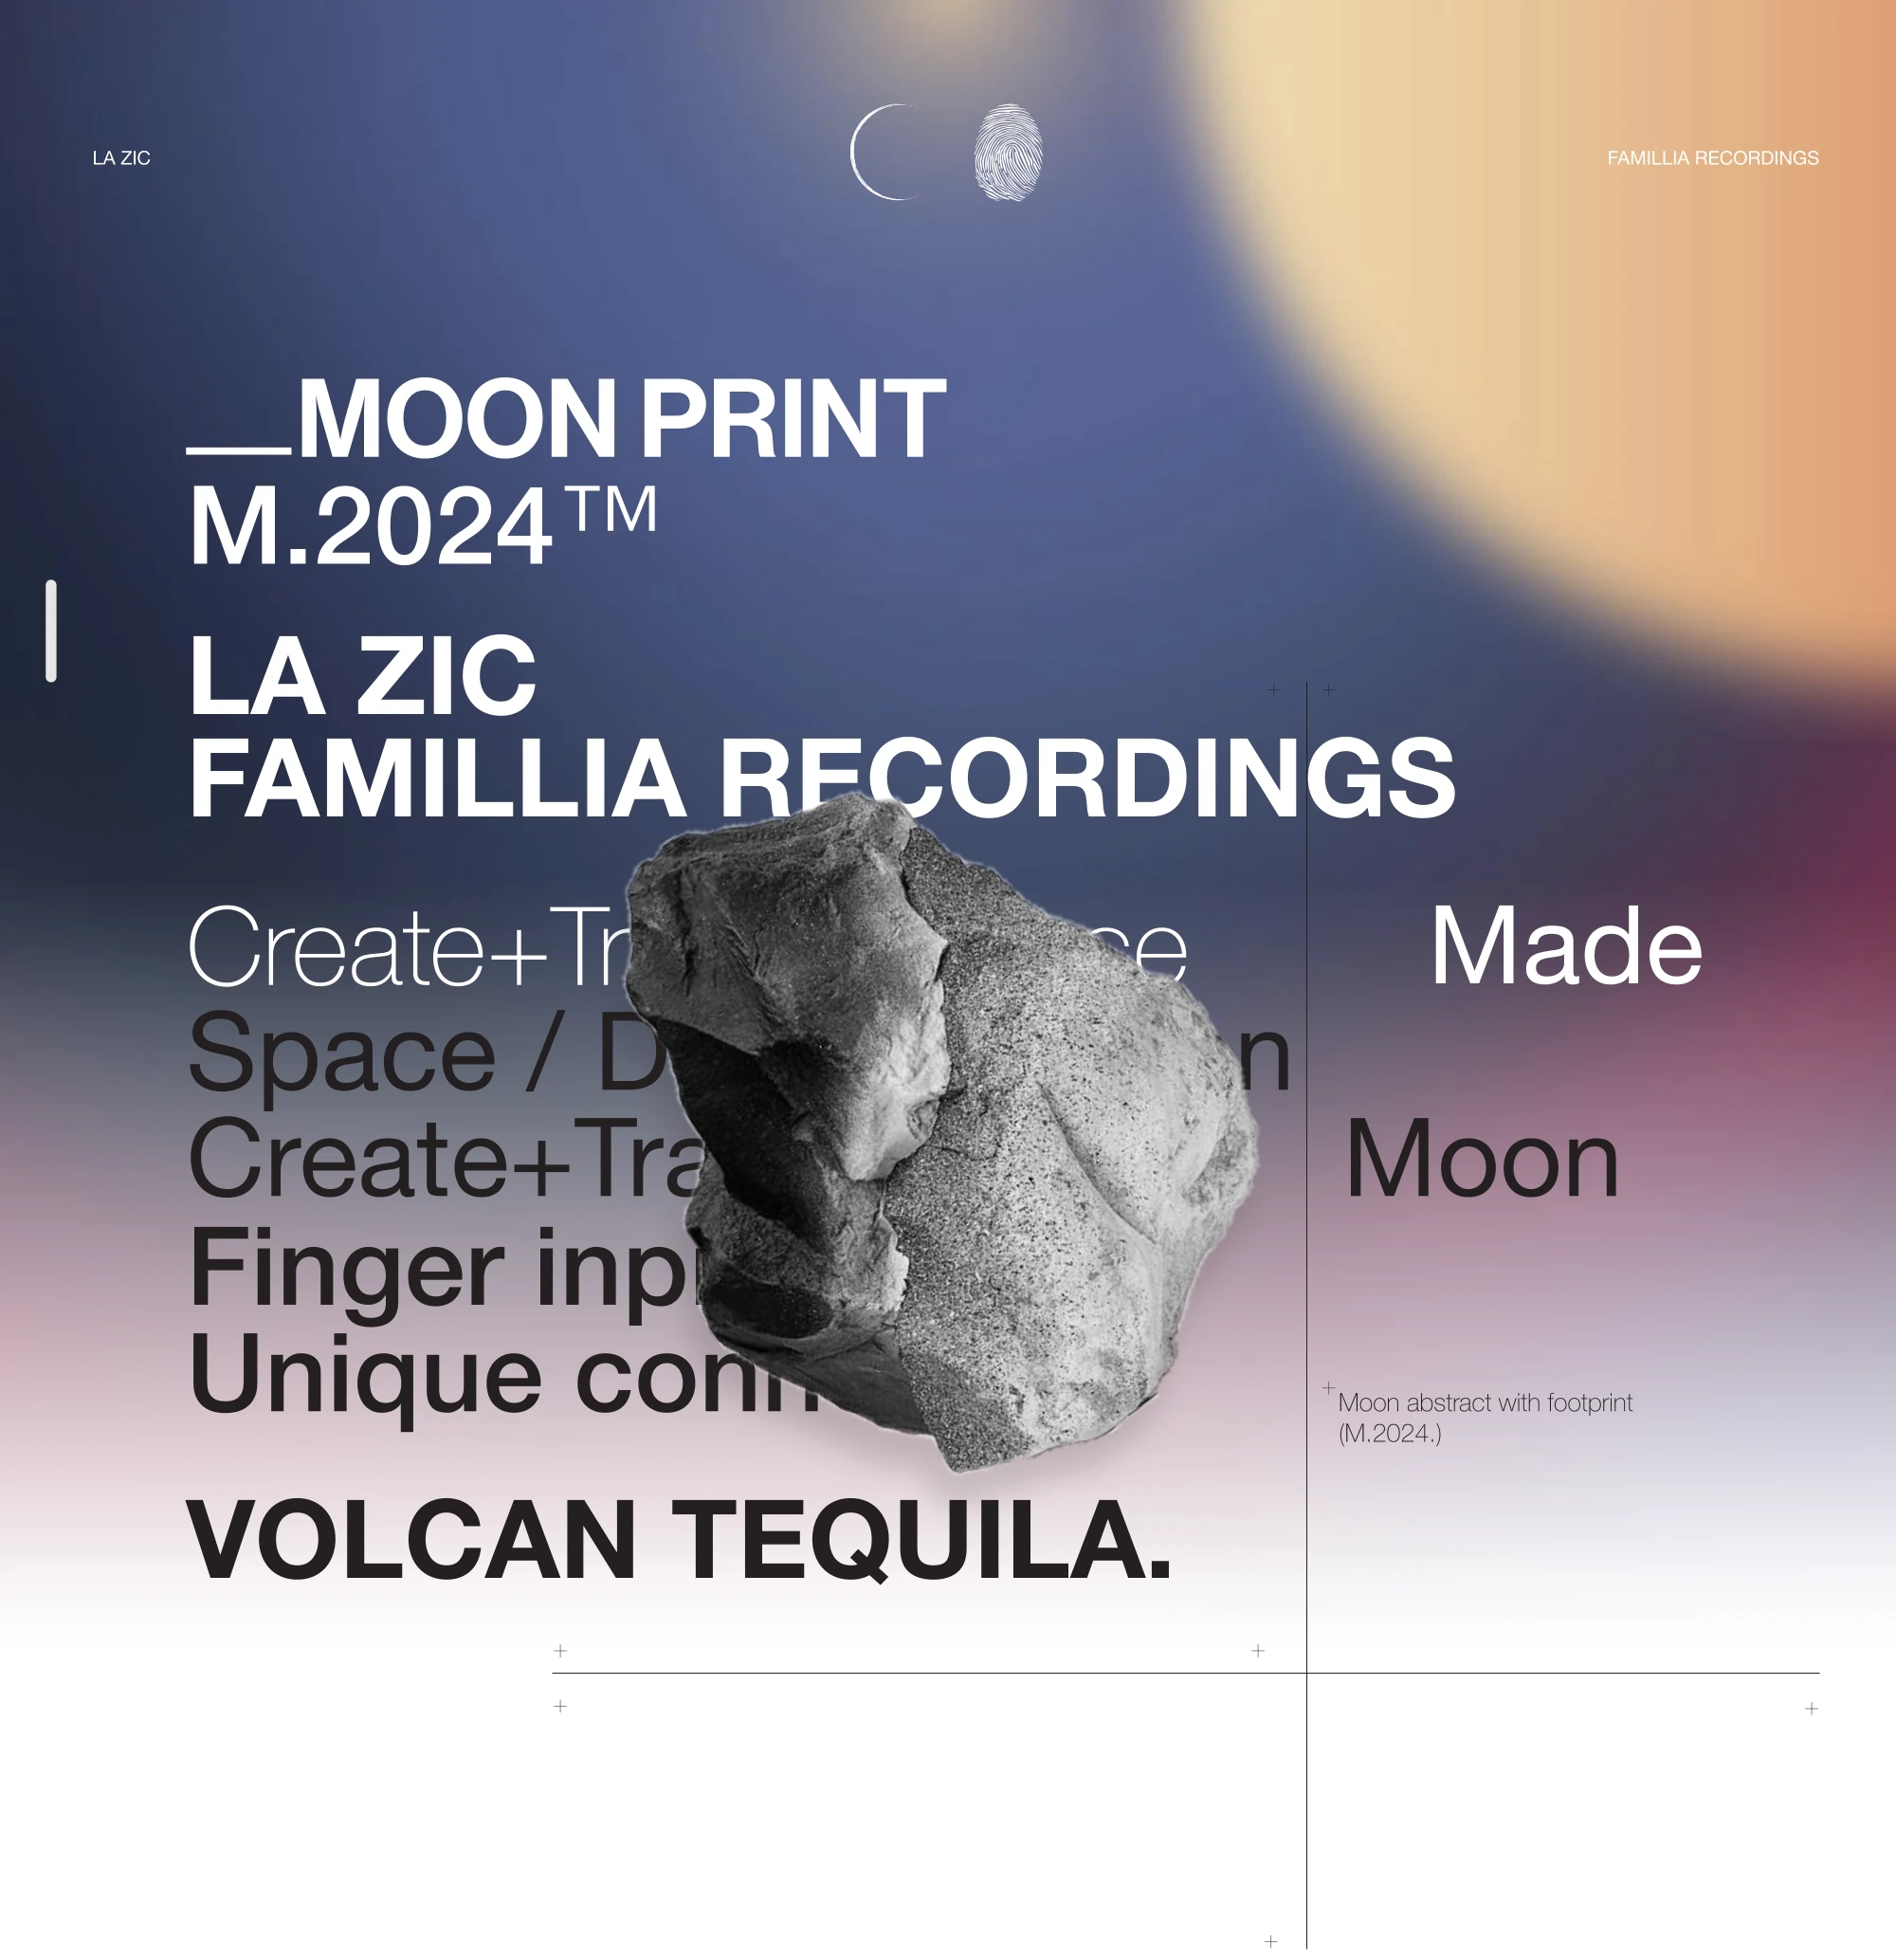 MOON PRINT
		M.2024™
		FAMILLIA RECORDINGS
		Create+Trascendence
		Desert / Desti nation
		Create+Trascendence
		Finger inpiration
		Unique connection
		VOLCAN TEQUILA.	
		Made
		Moon
		Estratto di luna con impronta
		(M.2024.)